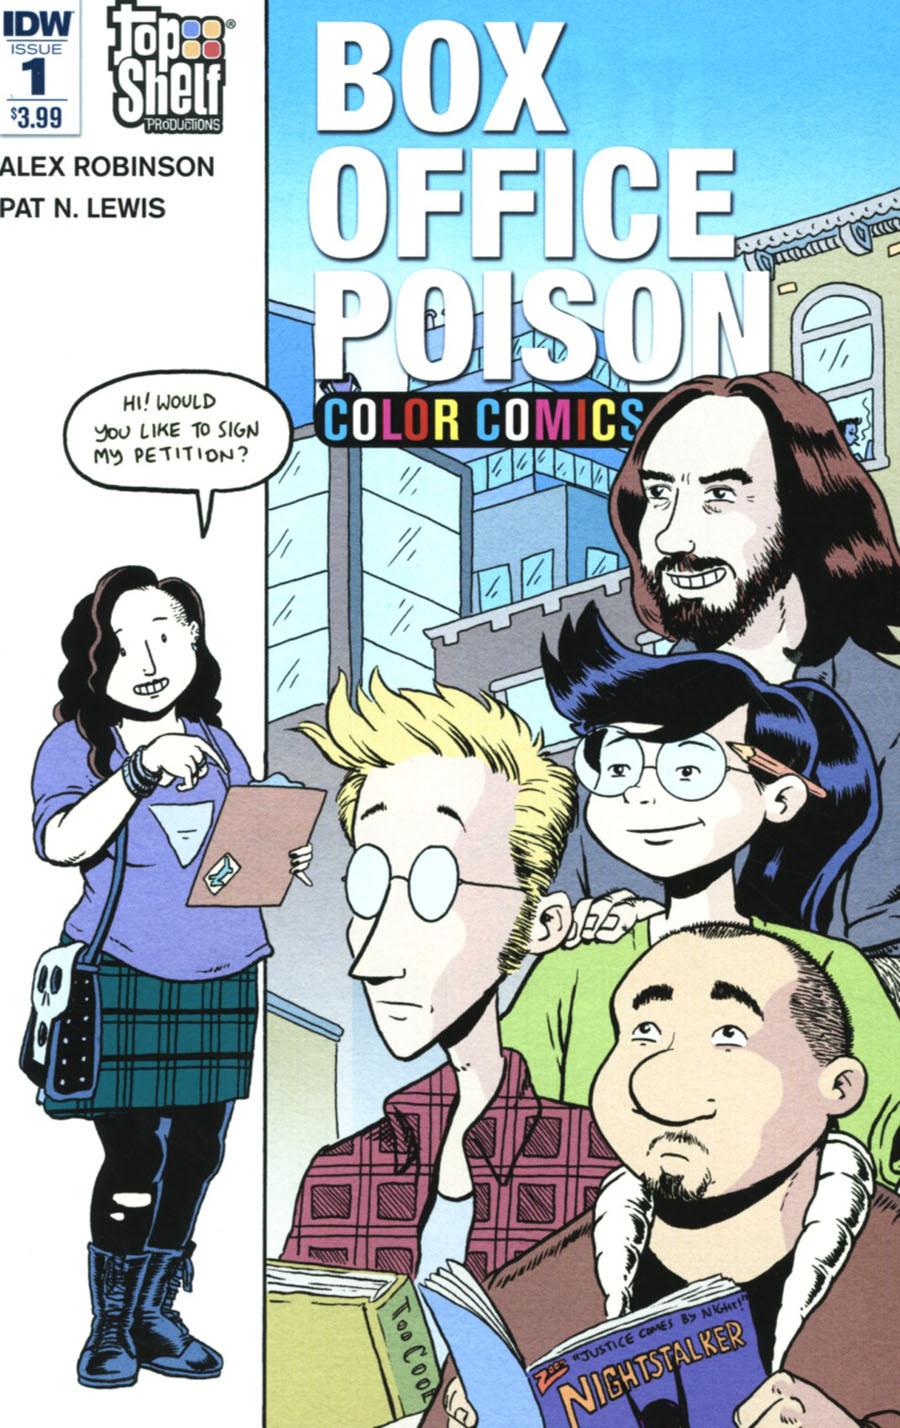 Box Office Poison Color Comics Vol. 1 #1